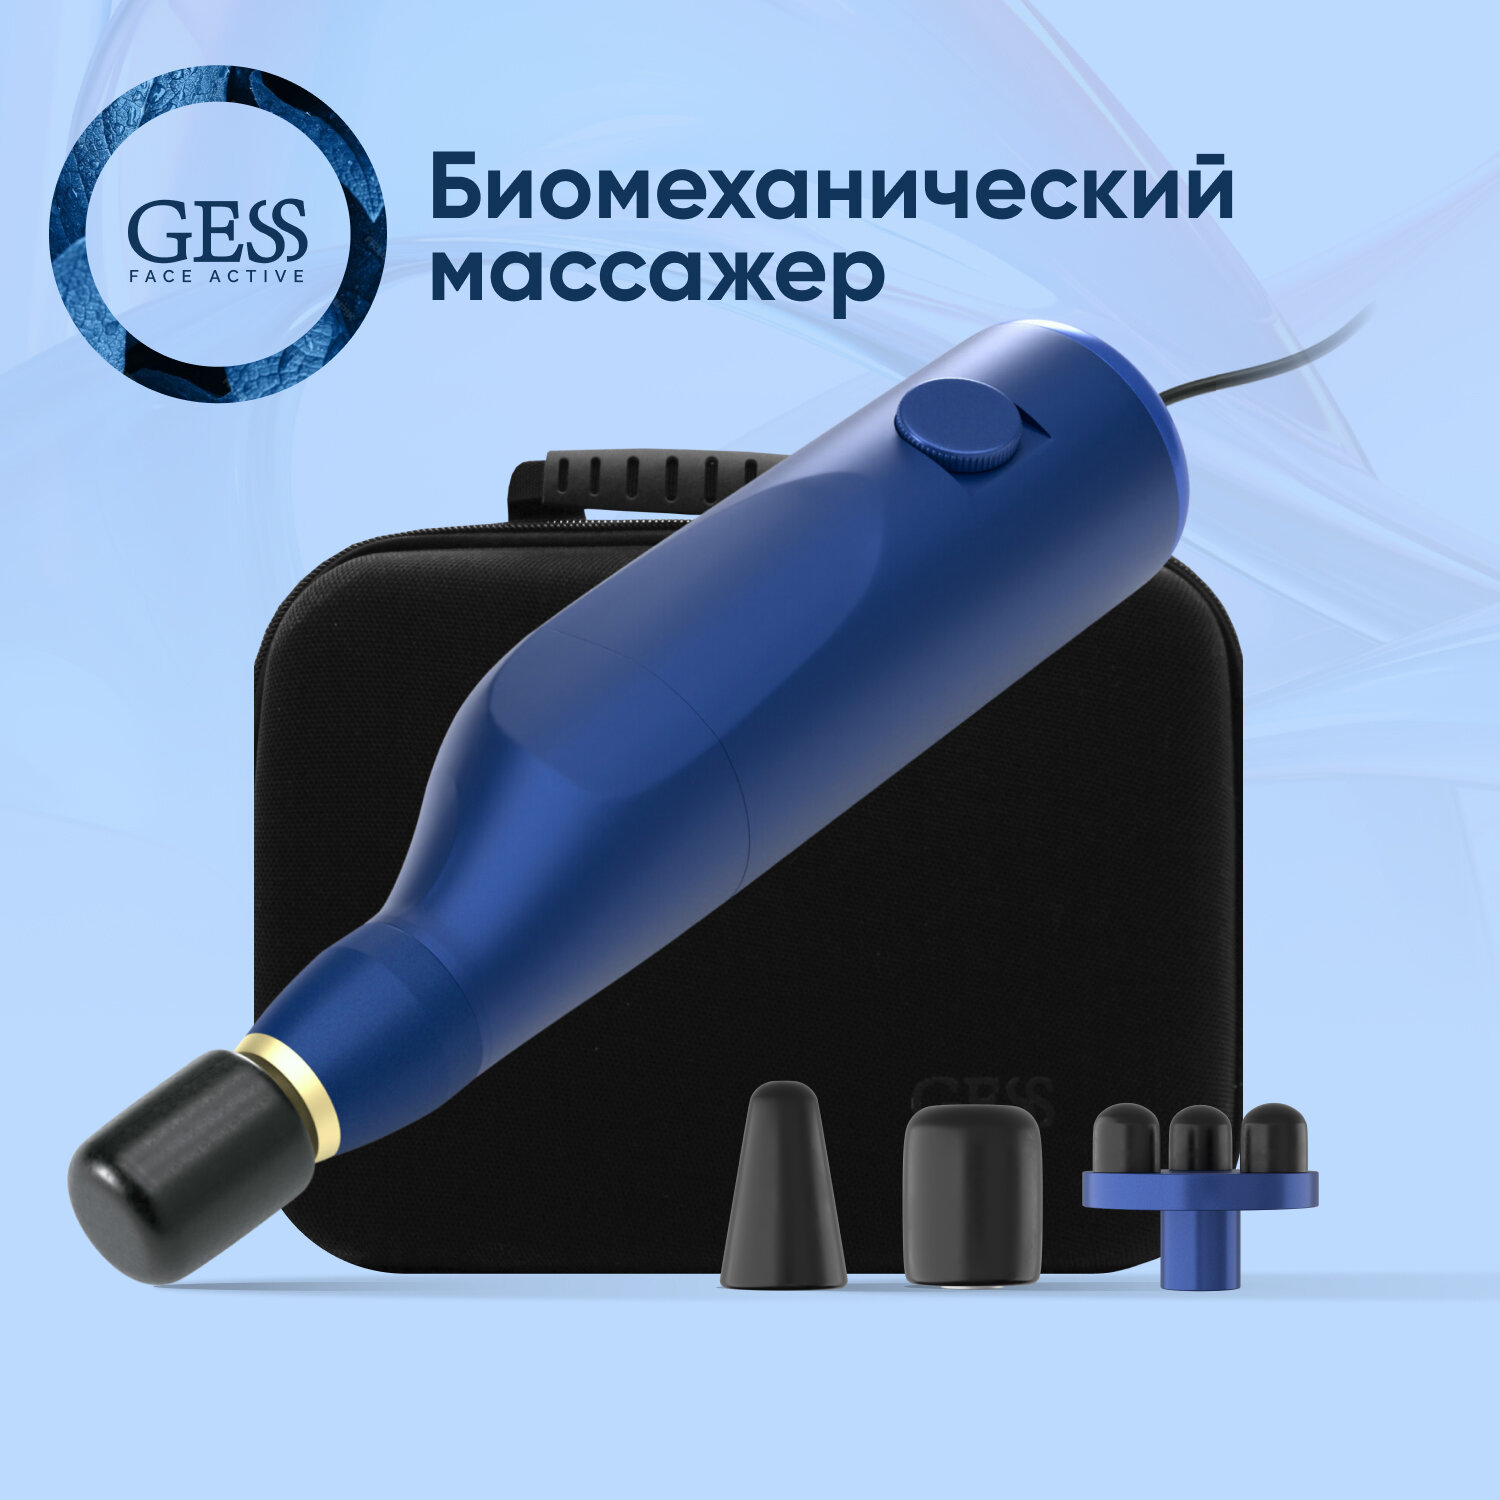 Косметологический аппарат БМС GESS FaceActive, биомеханический массажер, тренажёр, бмс назарова, 3 насадки